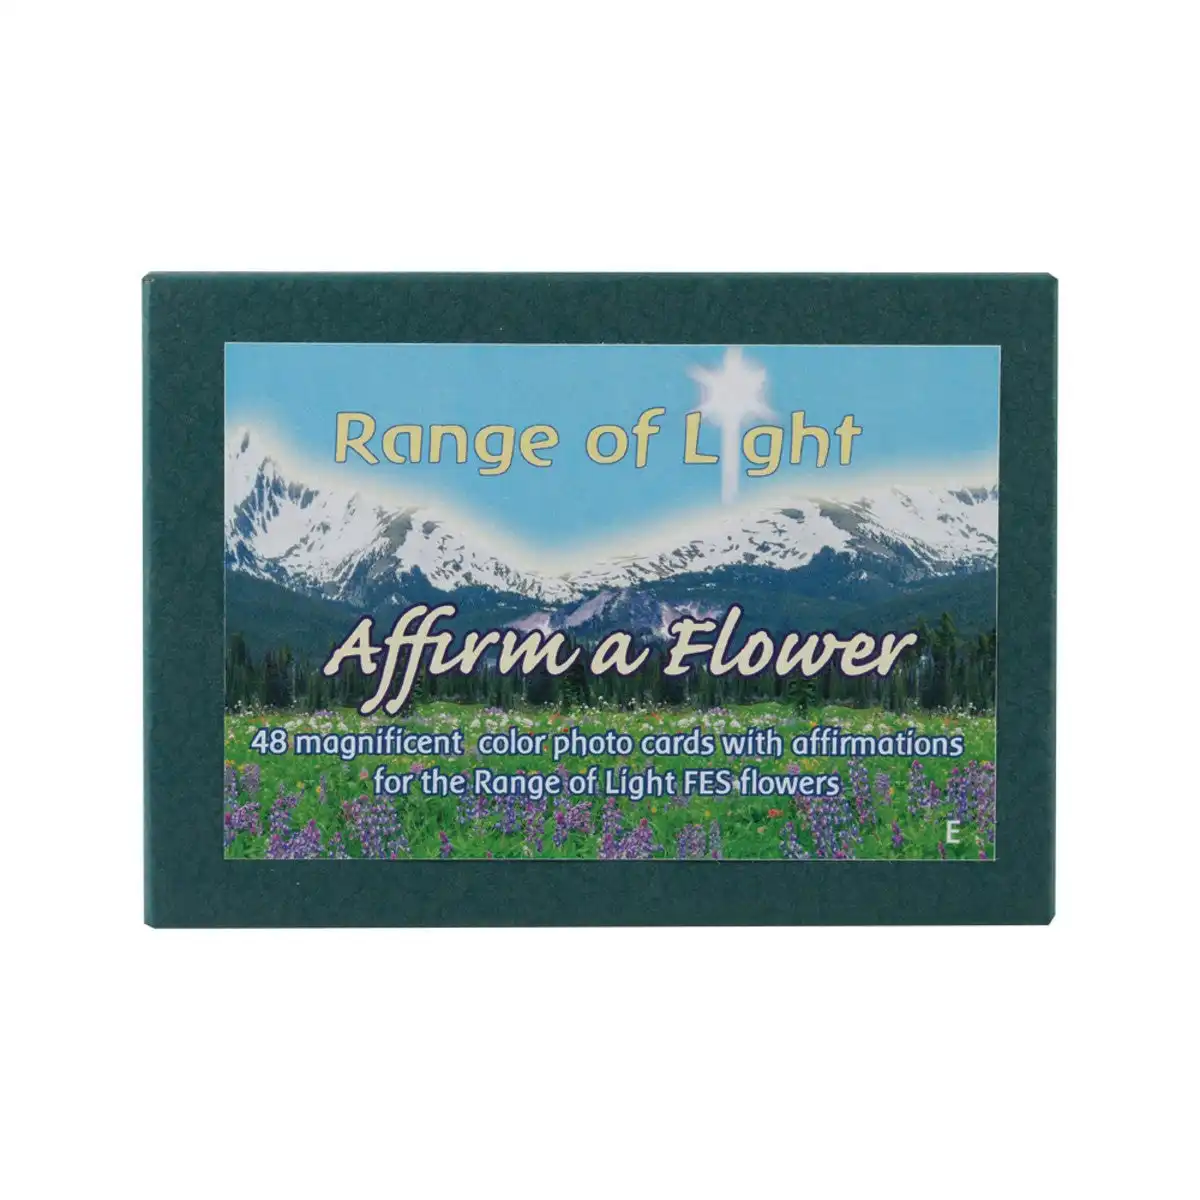 FES Affirm a Flower Cards: Range of Light Flower Essences x 48 Set